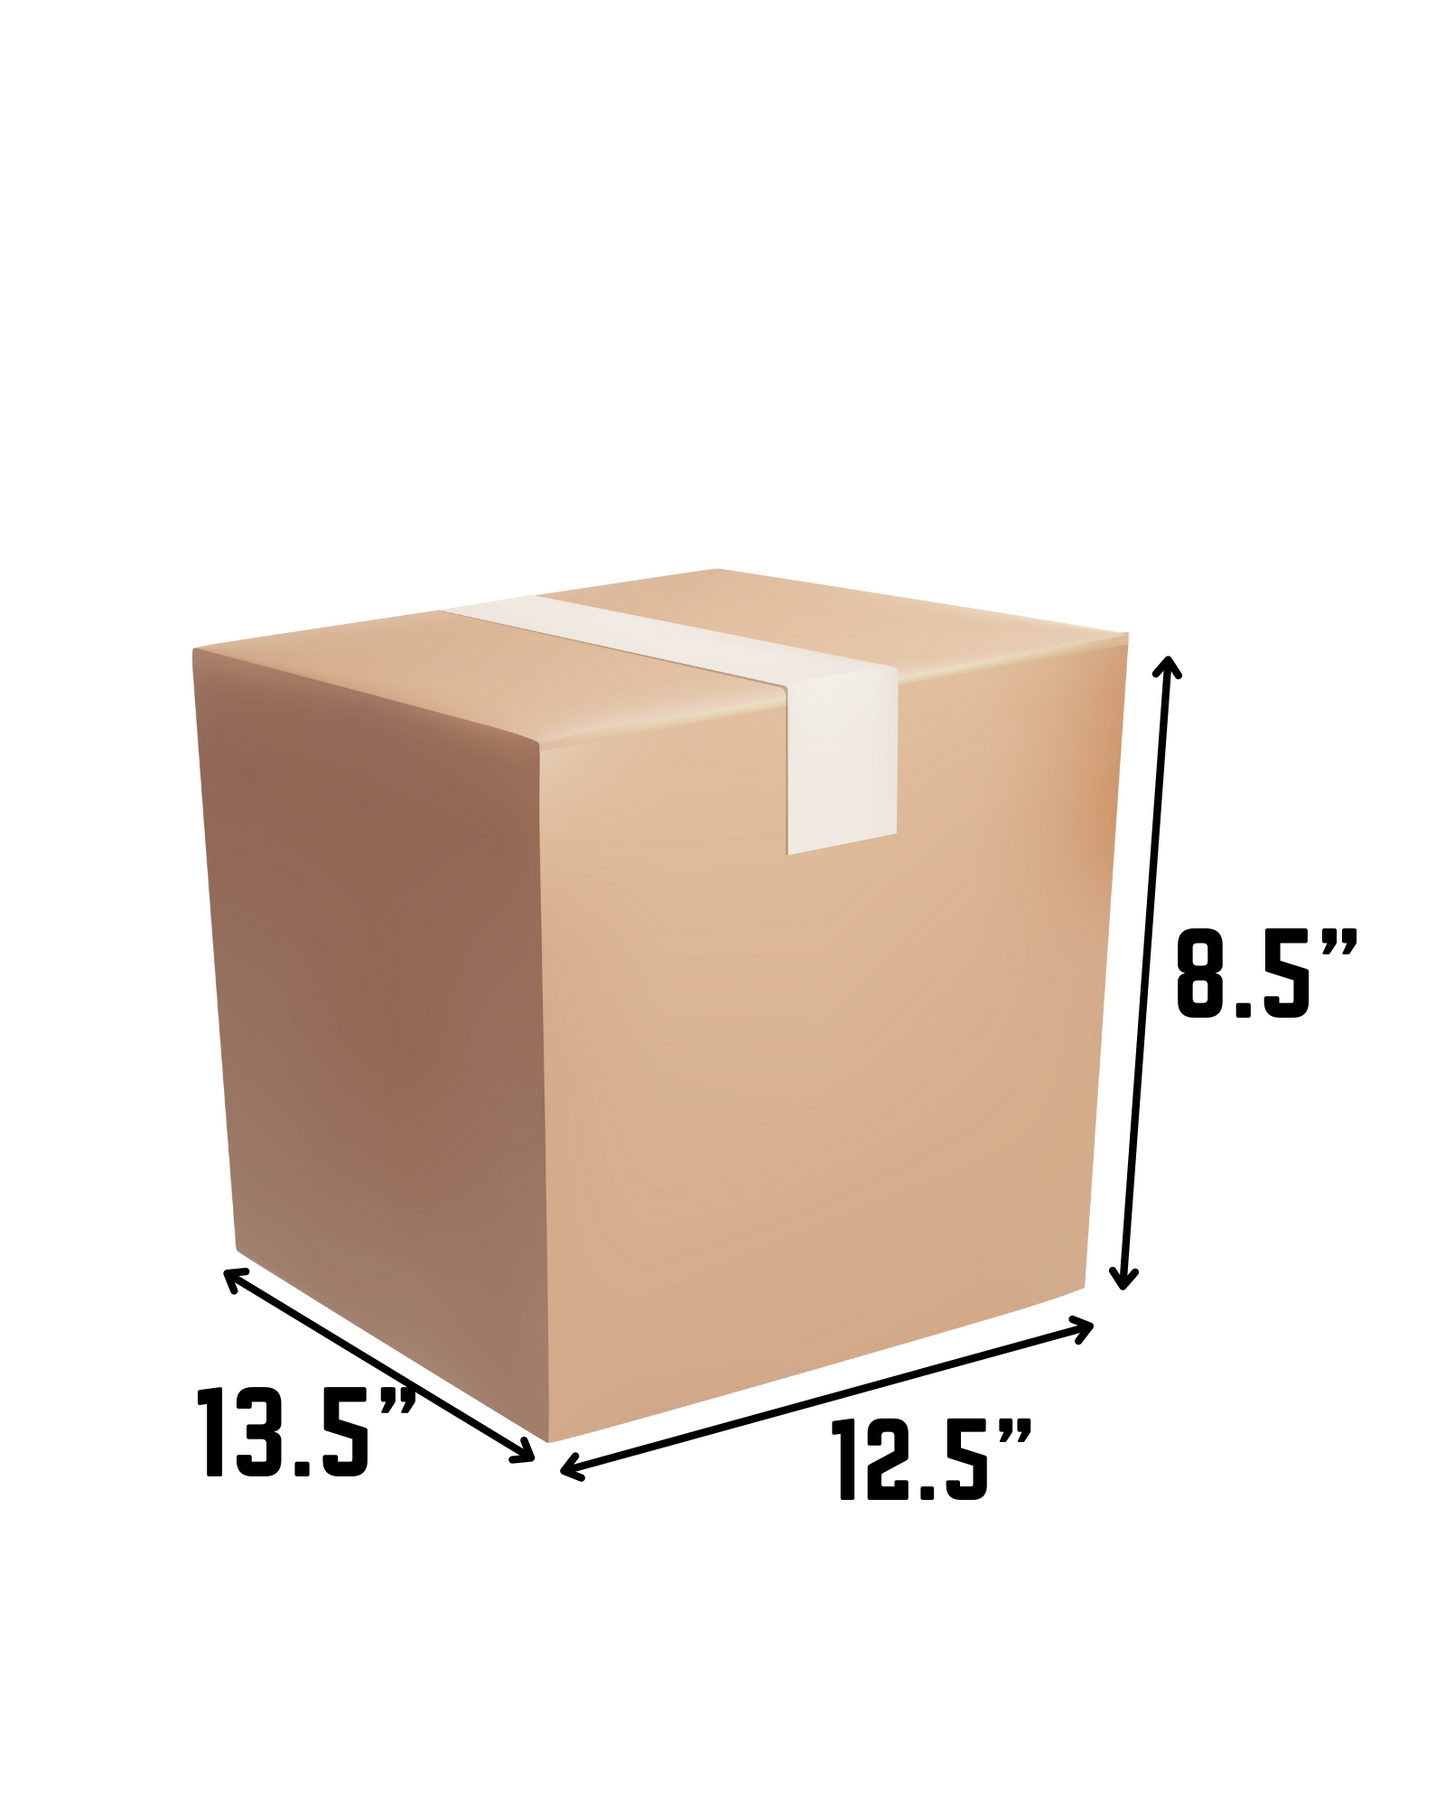 Approx. 1 cube used box L13.5" x W12.5" x H8.5"